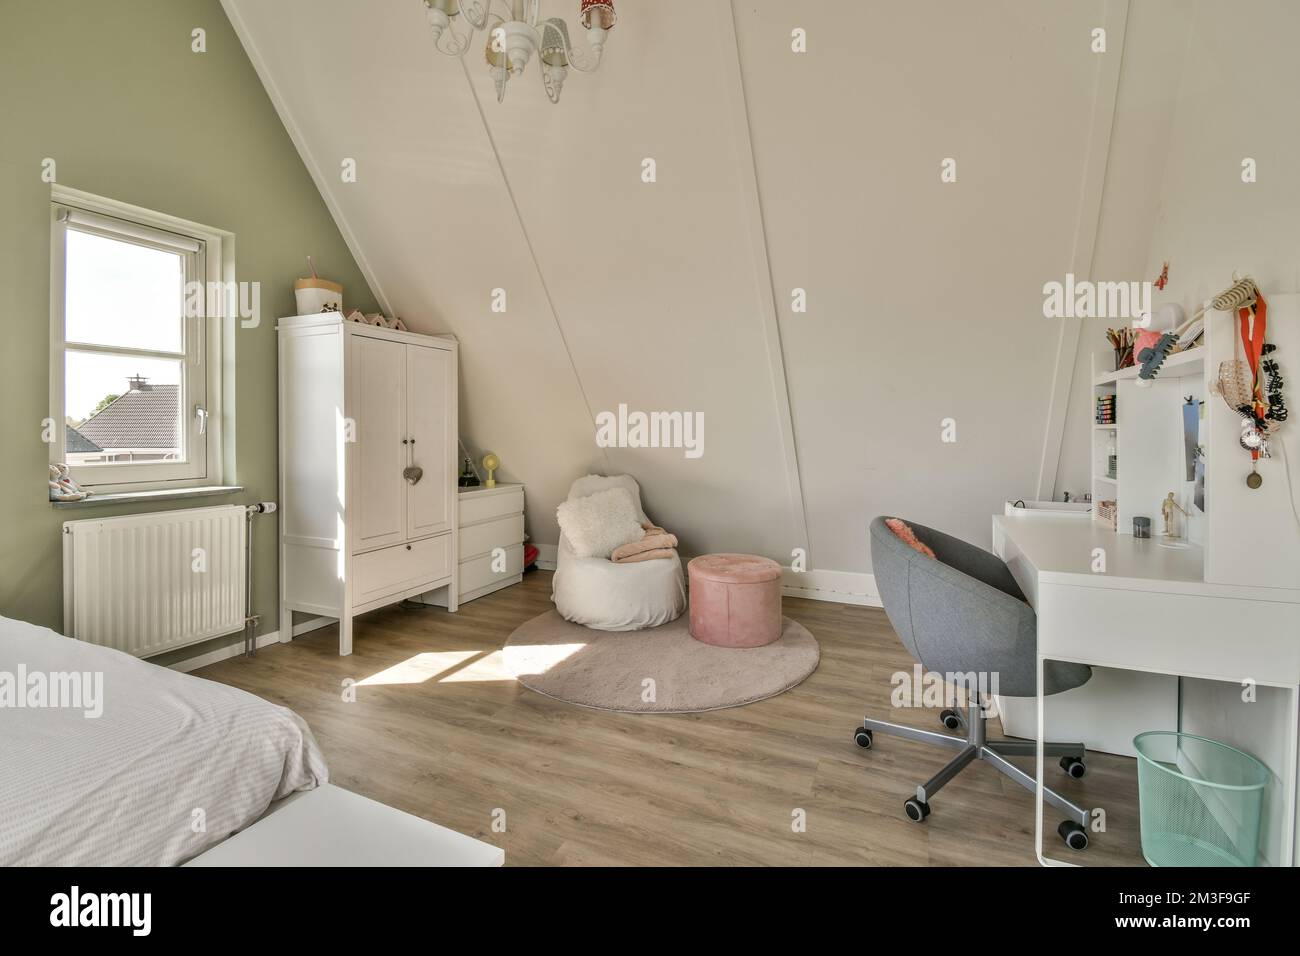 Buhardilla Interior De Dormitorio Con Suelo De Parquet Y Paredes